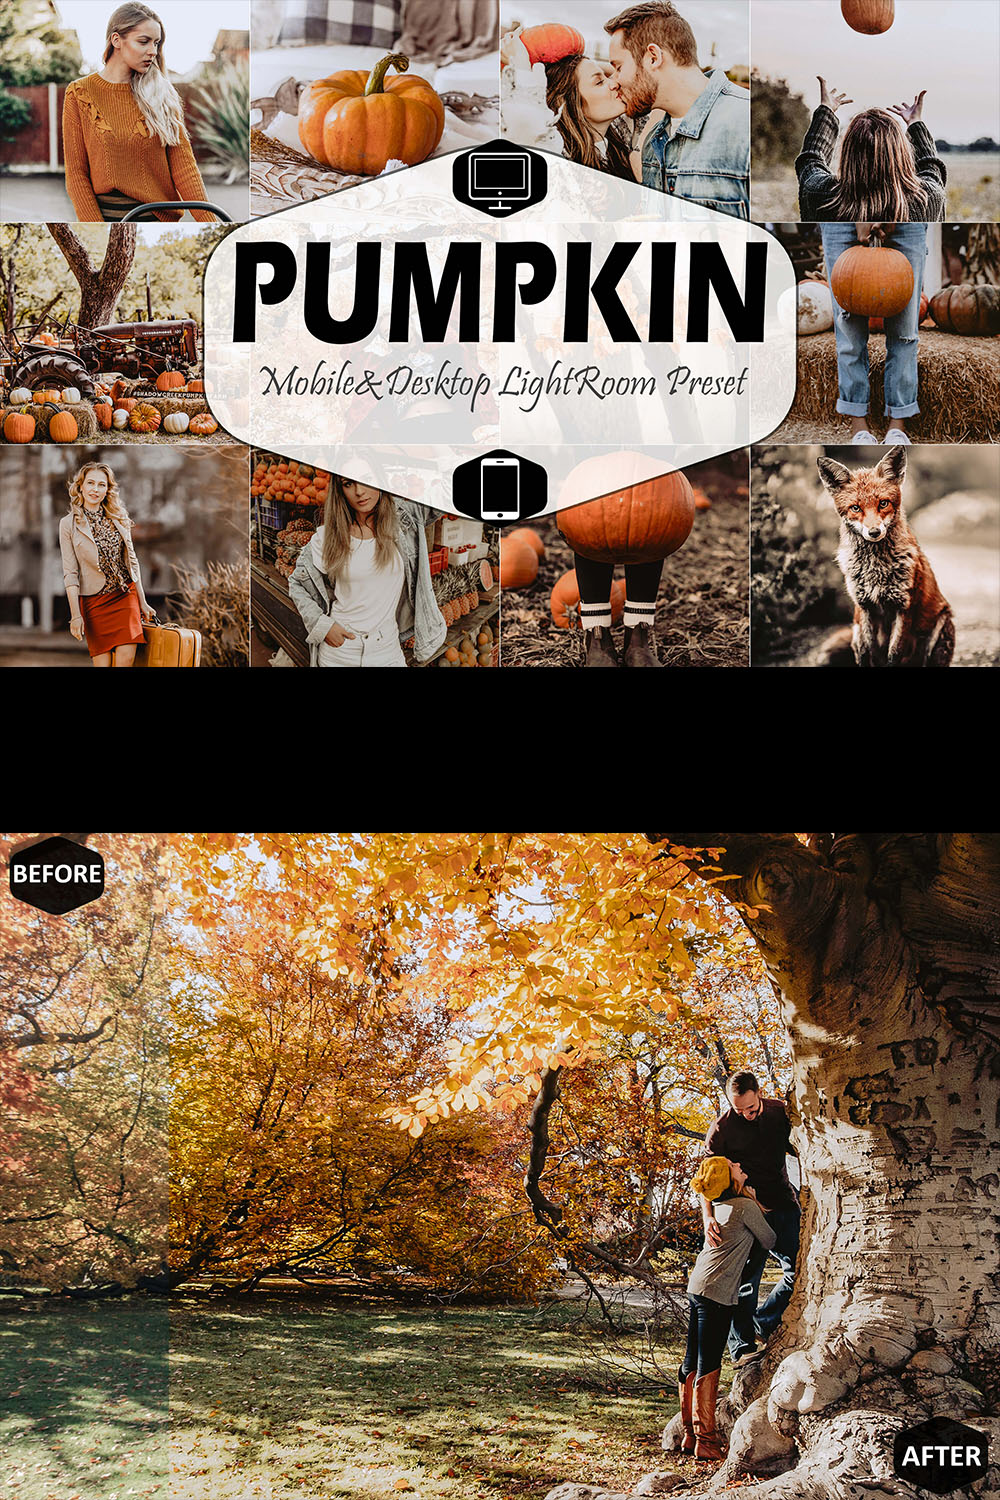 Pumpkin Mobile & Desktop Lightroom Presets, instagram modern LR preset, trendy filter , best DNG travel lifestyle fashion theme pinterest preview image.